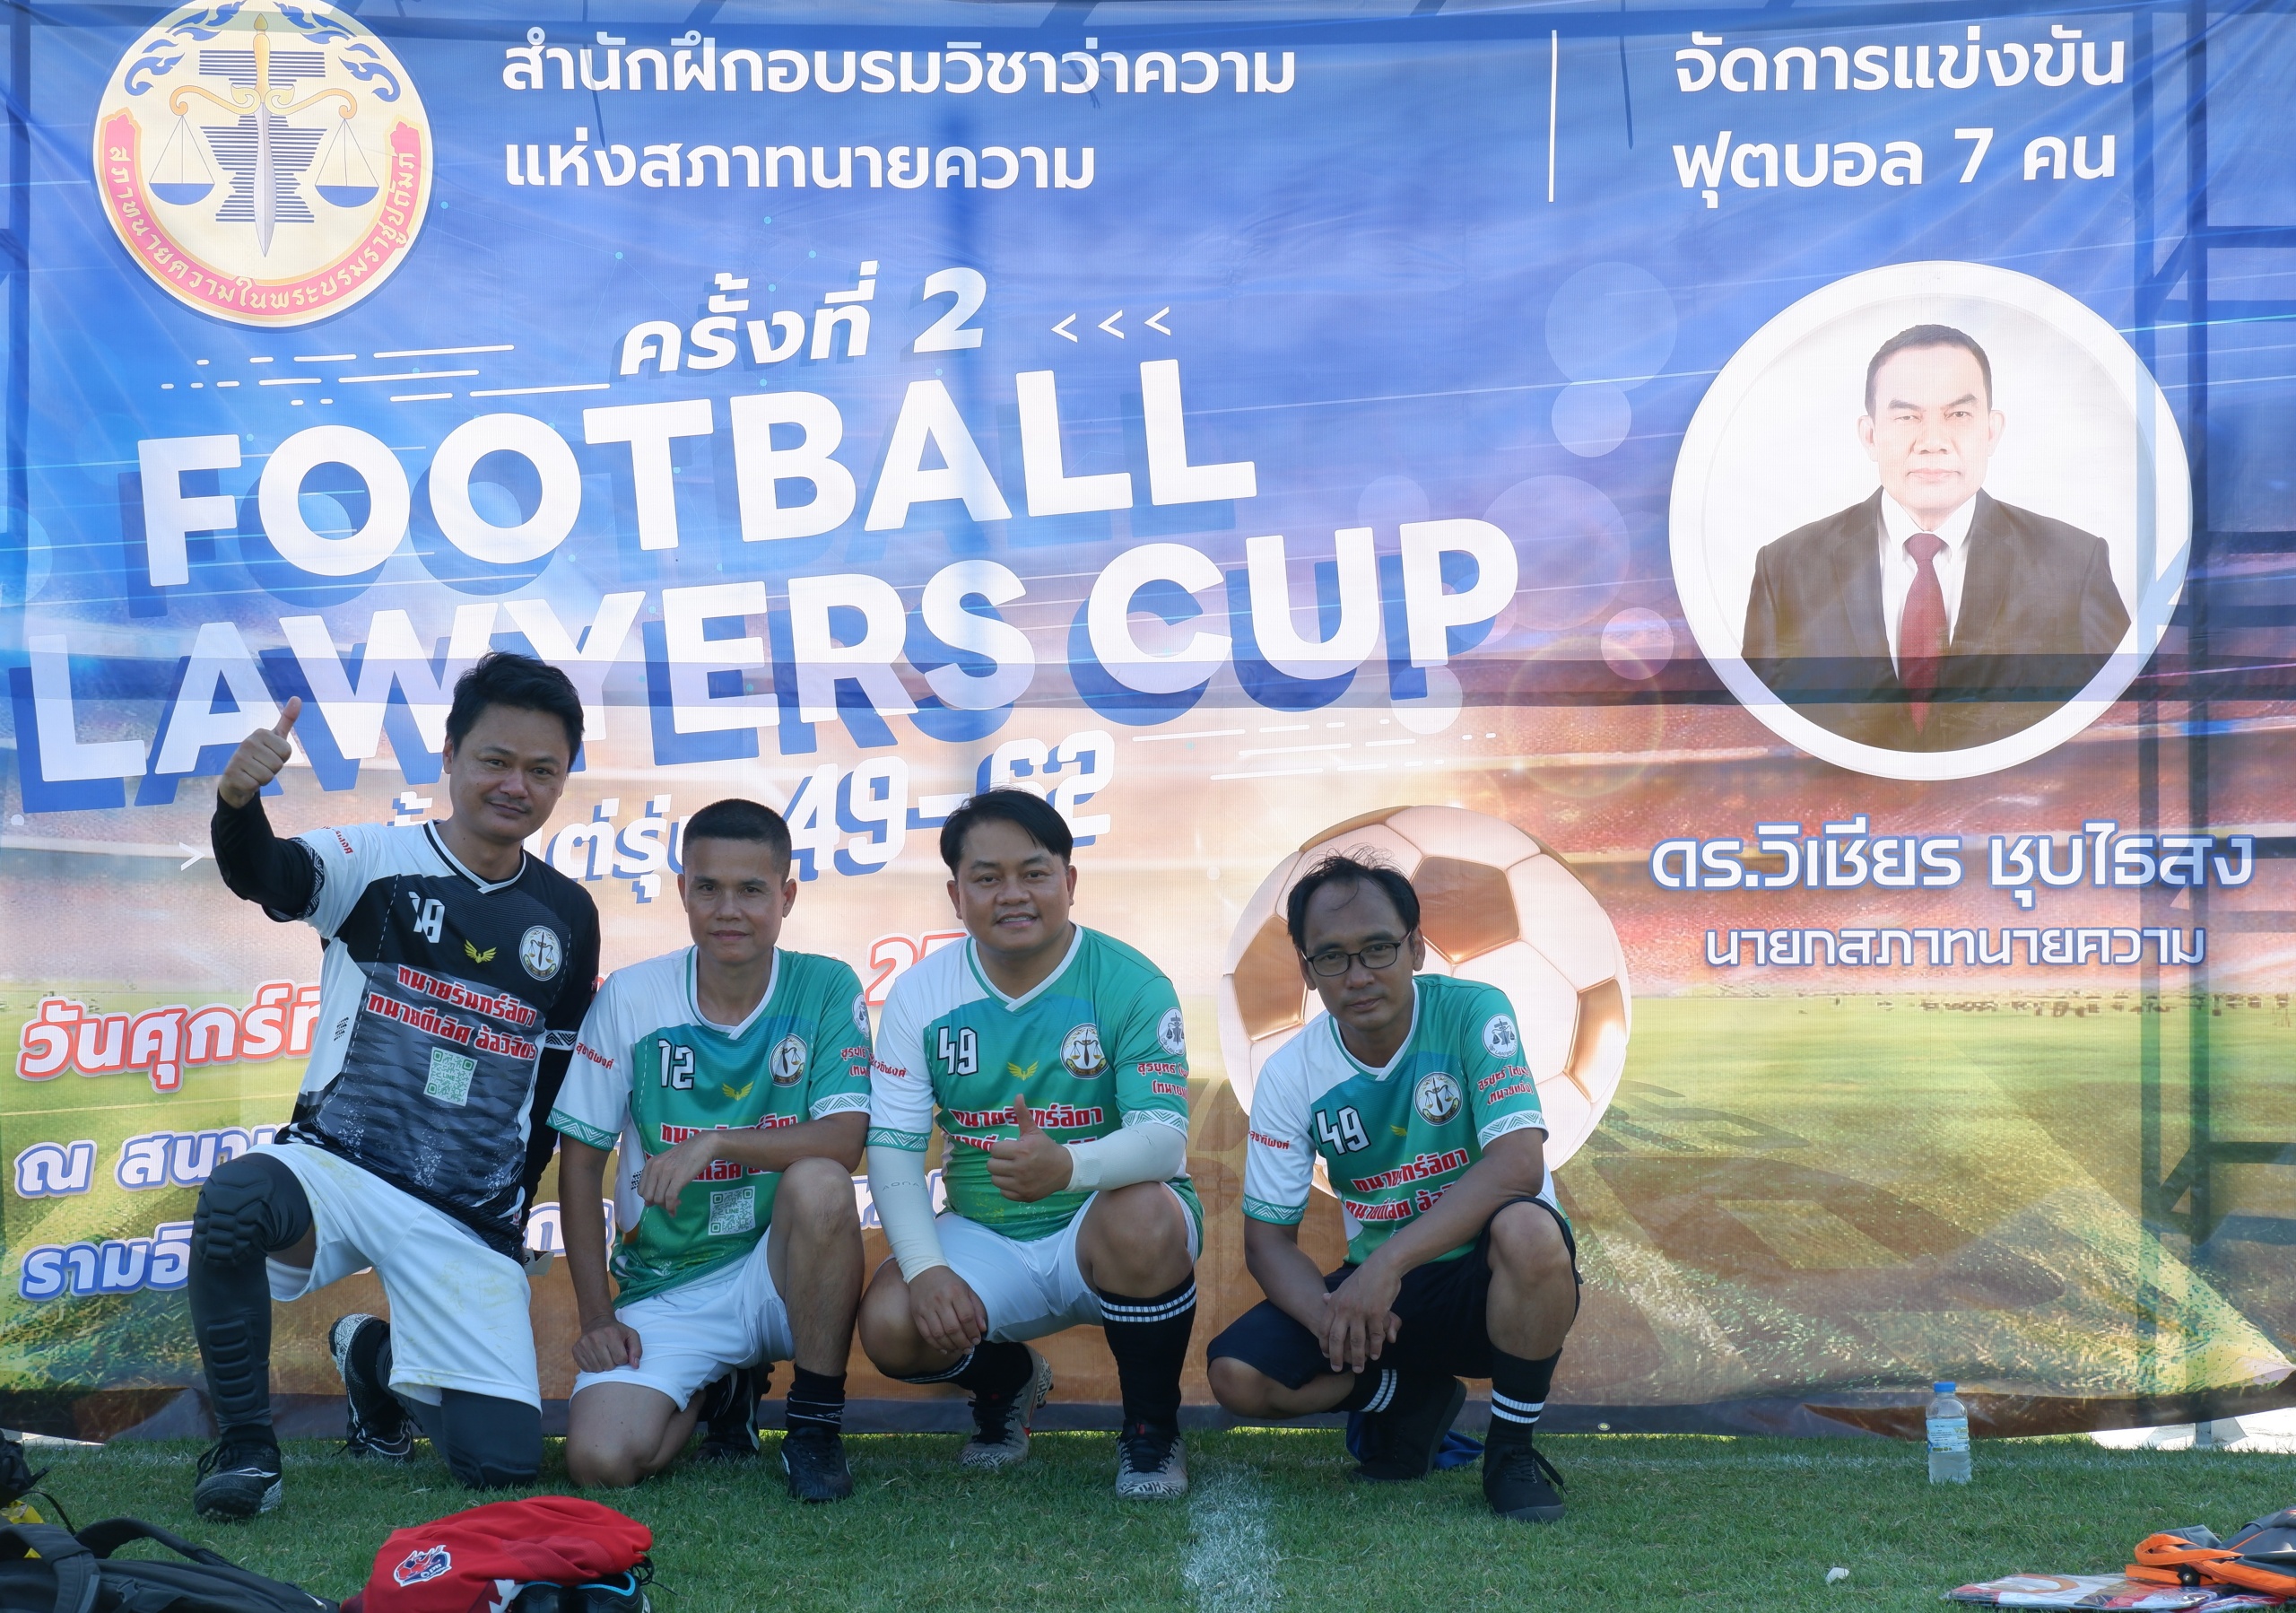 Football-Lawyer-Cup-ครั้งที่-02-ทนายเจษฎา-ทนายนาวิน-ทนายพุฒ-ทนายวัตร